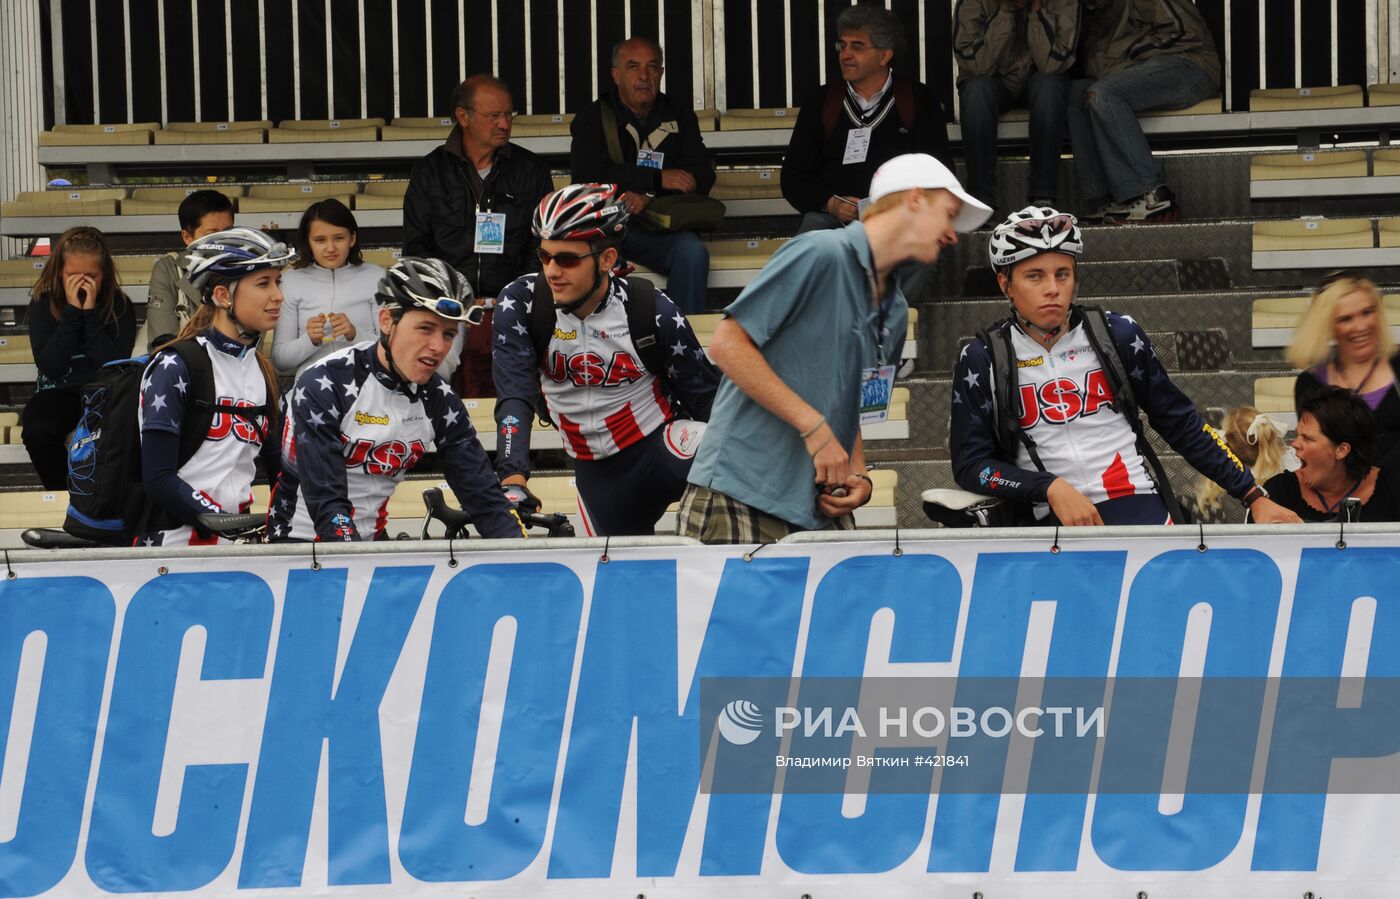 Чемпионат мира по велоспорту среди юниоров прошел в Москве